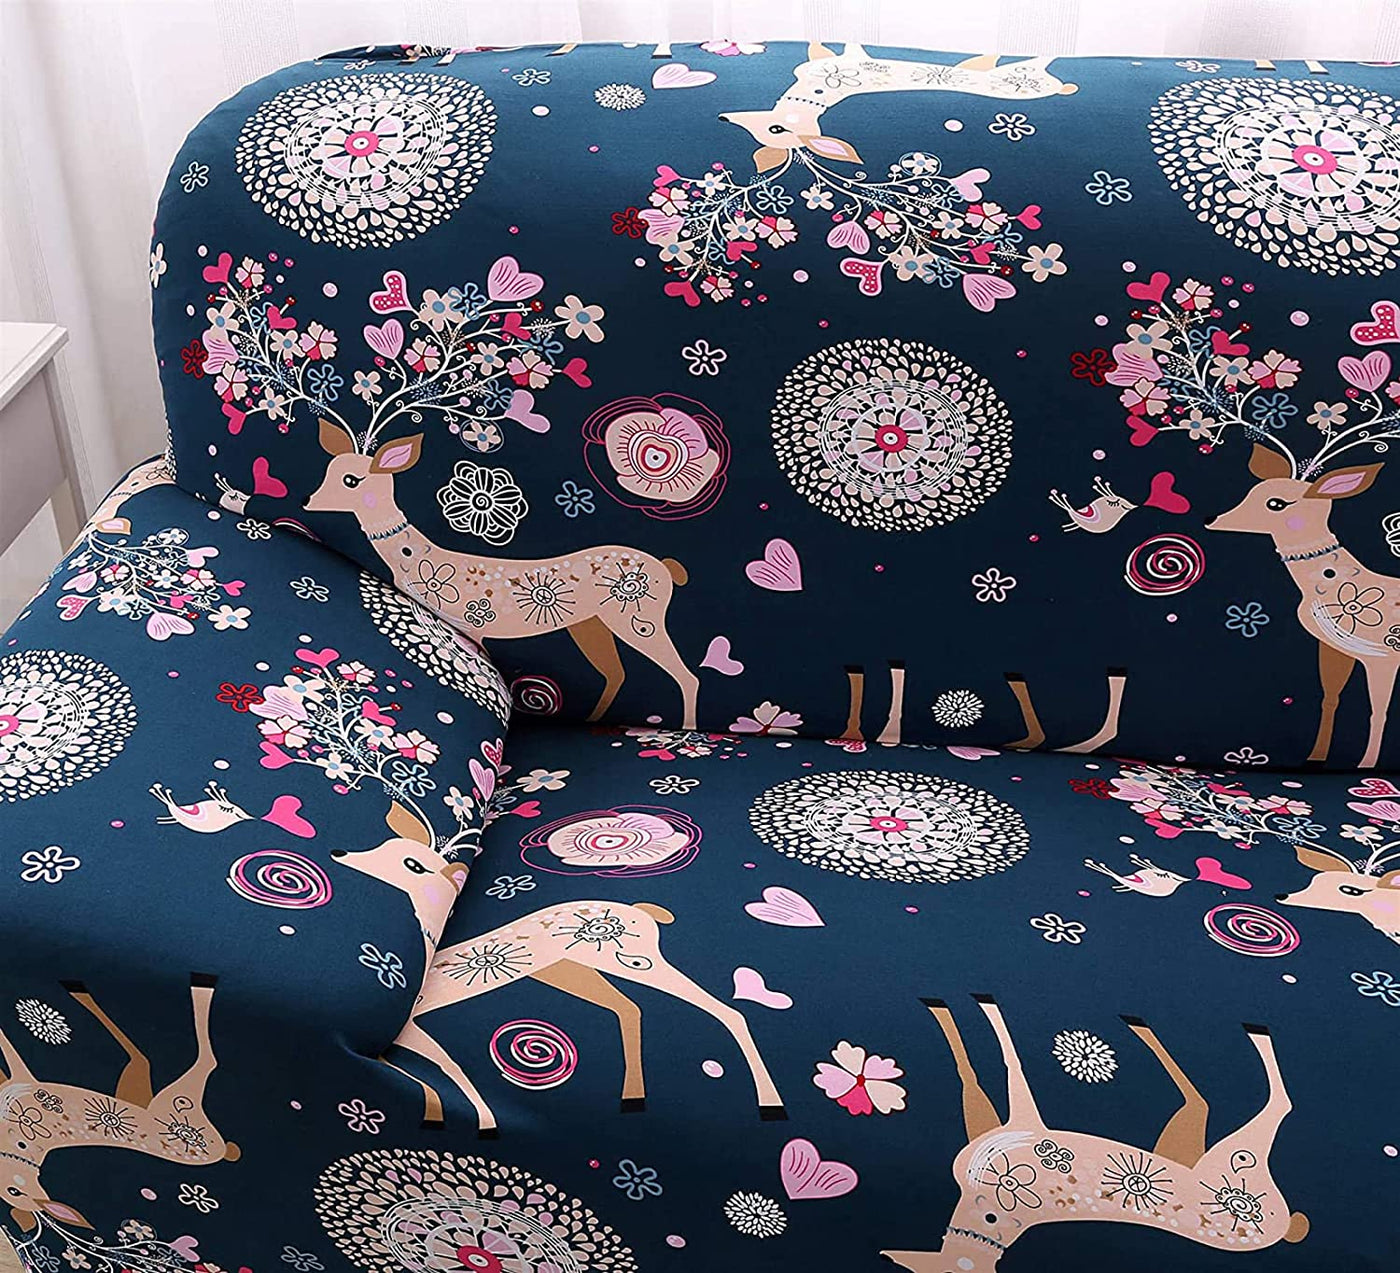 Universal Elastic Sofa Cover (Blue Deer)